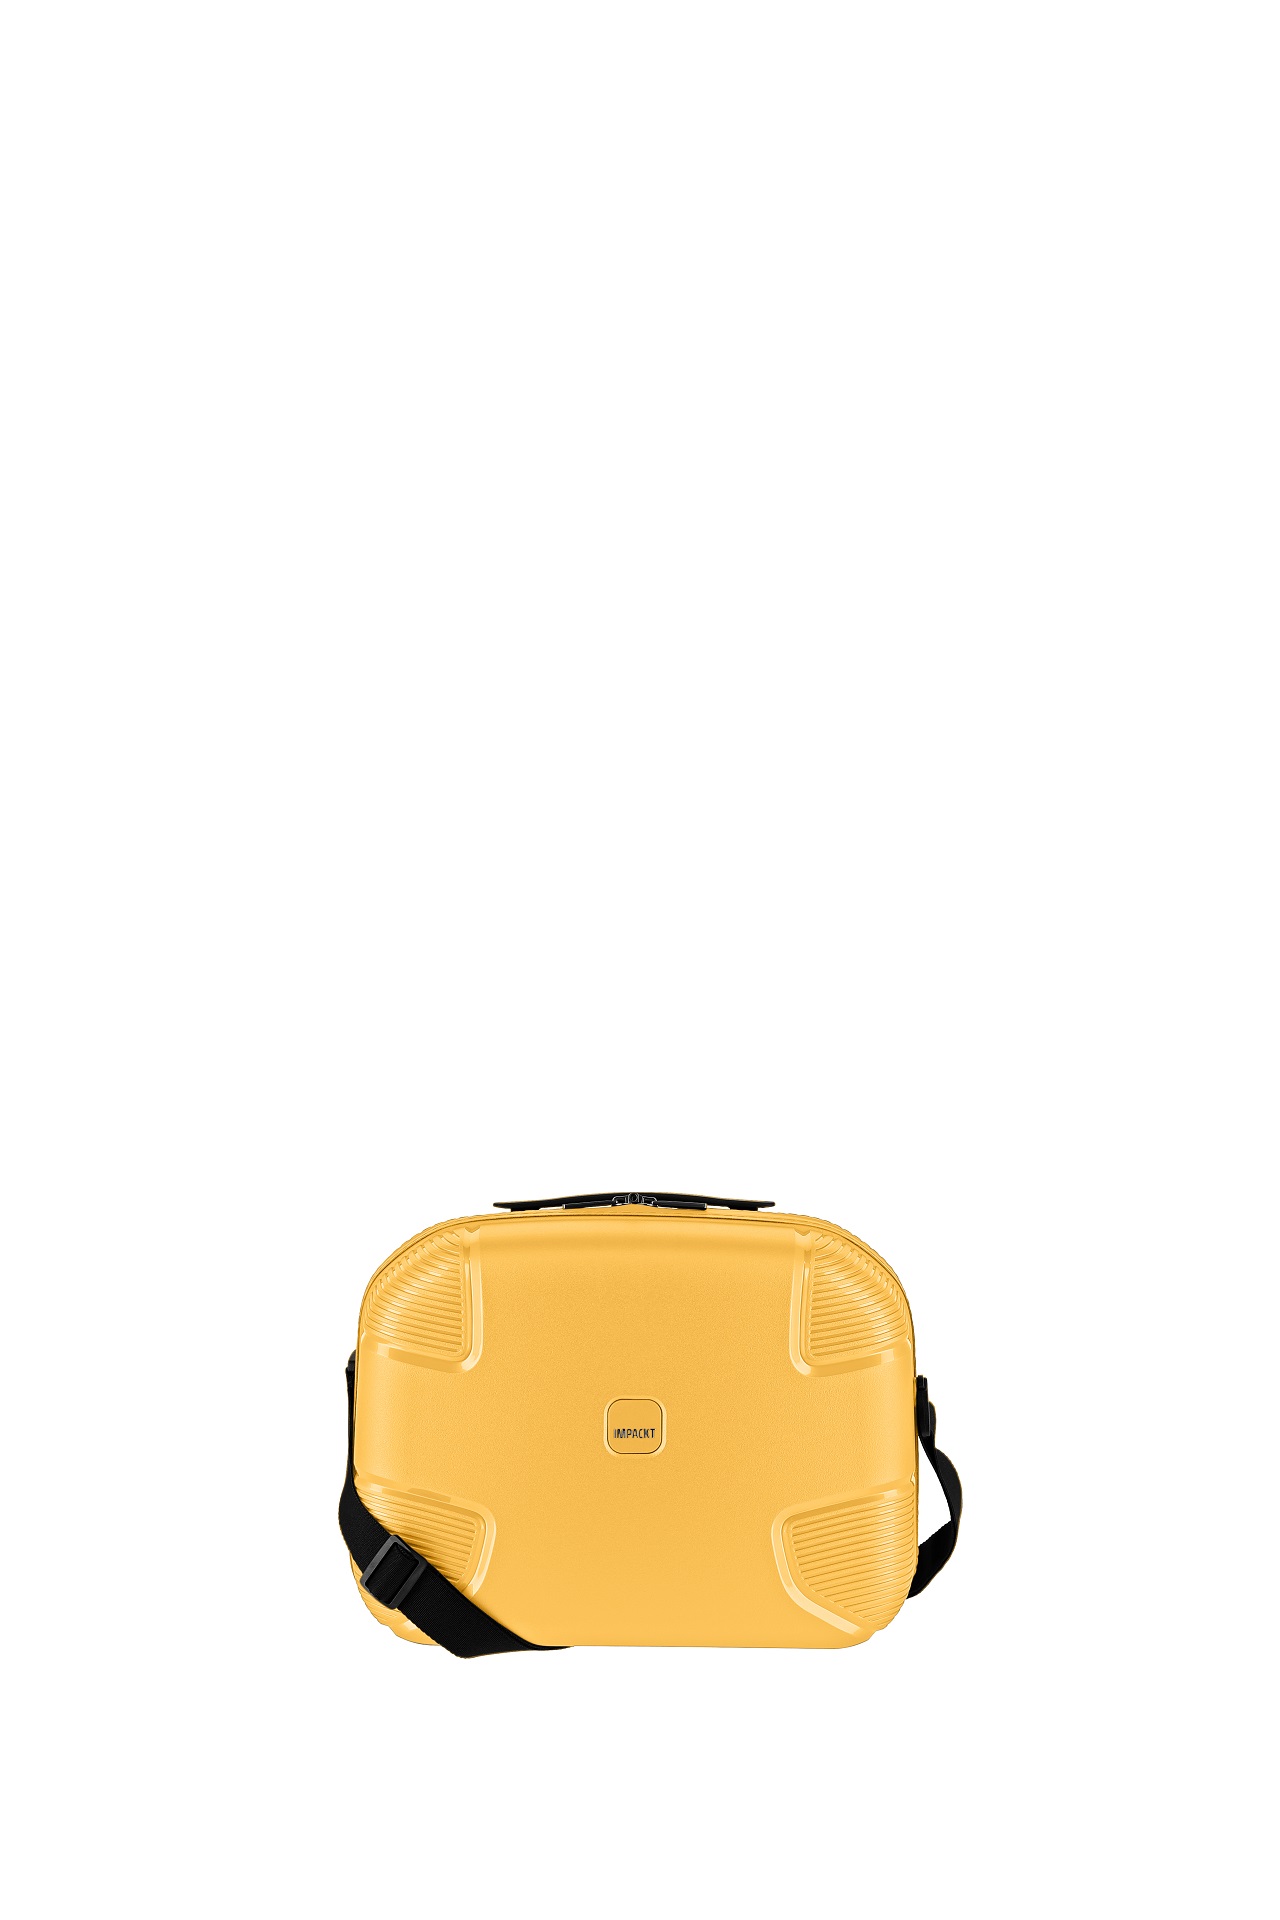 E-shop IMPACKT IP1 Beauty case Sunset yellow